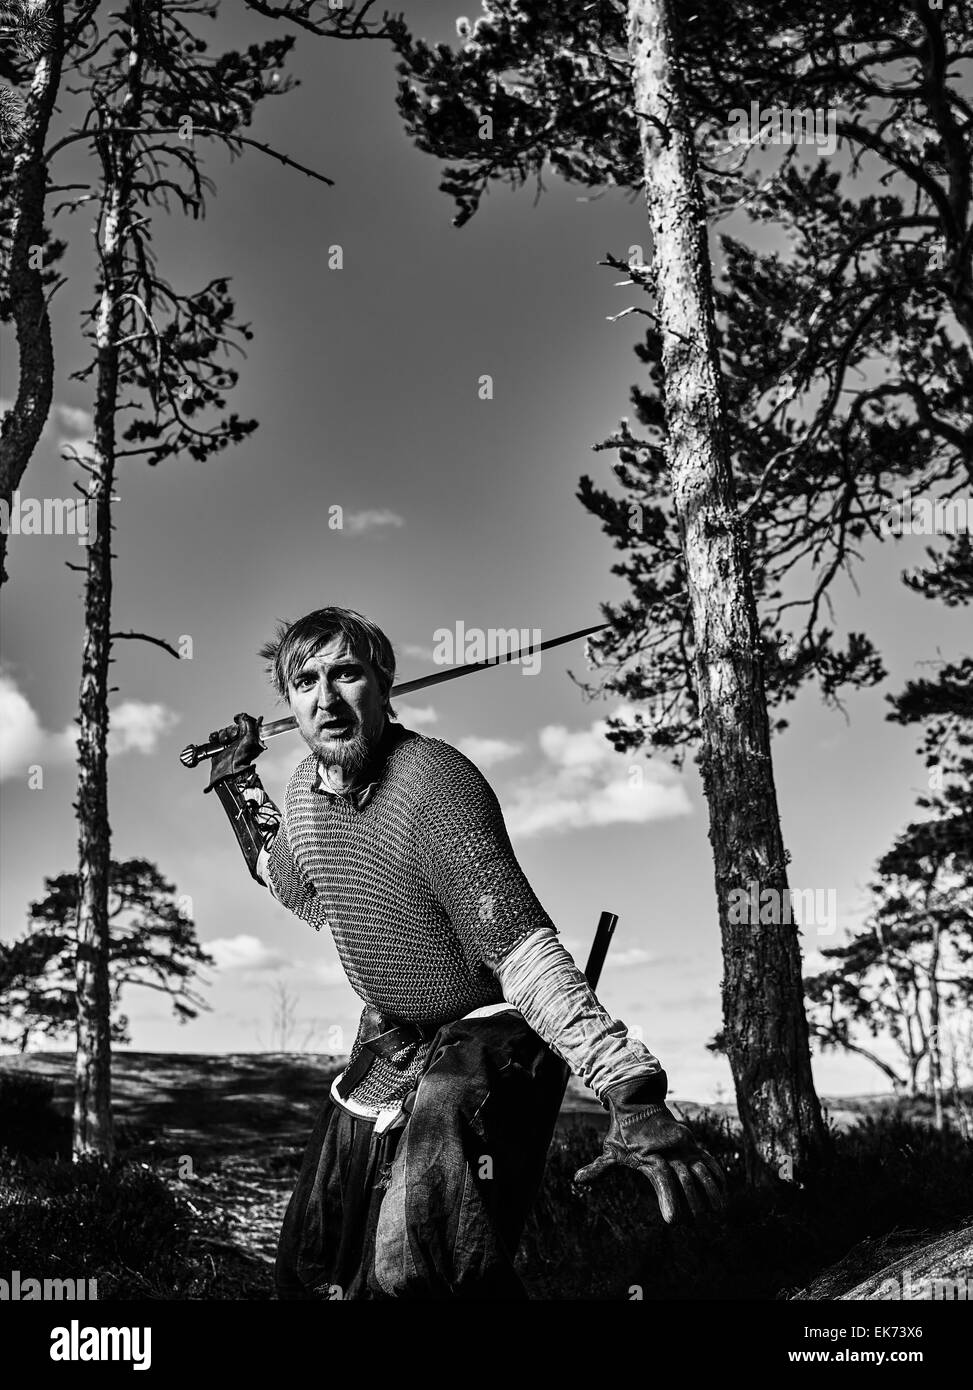 Guerrier viking médiéval portant cotte et il a l'épée, sur la nature du fond, image en noir et blanc Banque D'Images